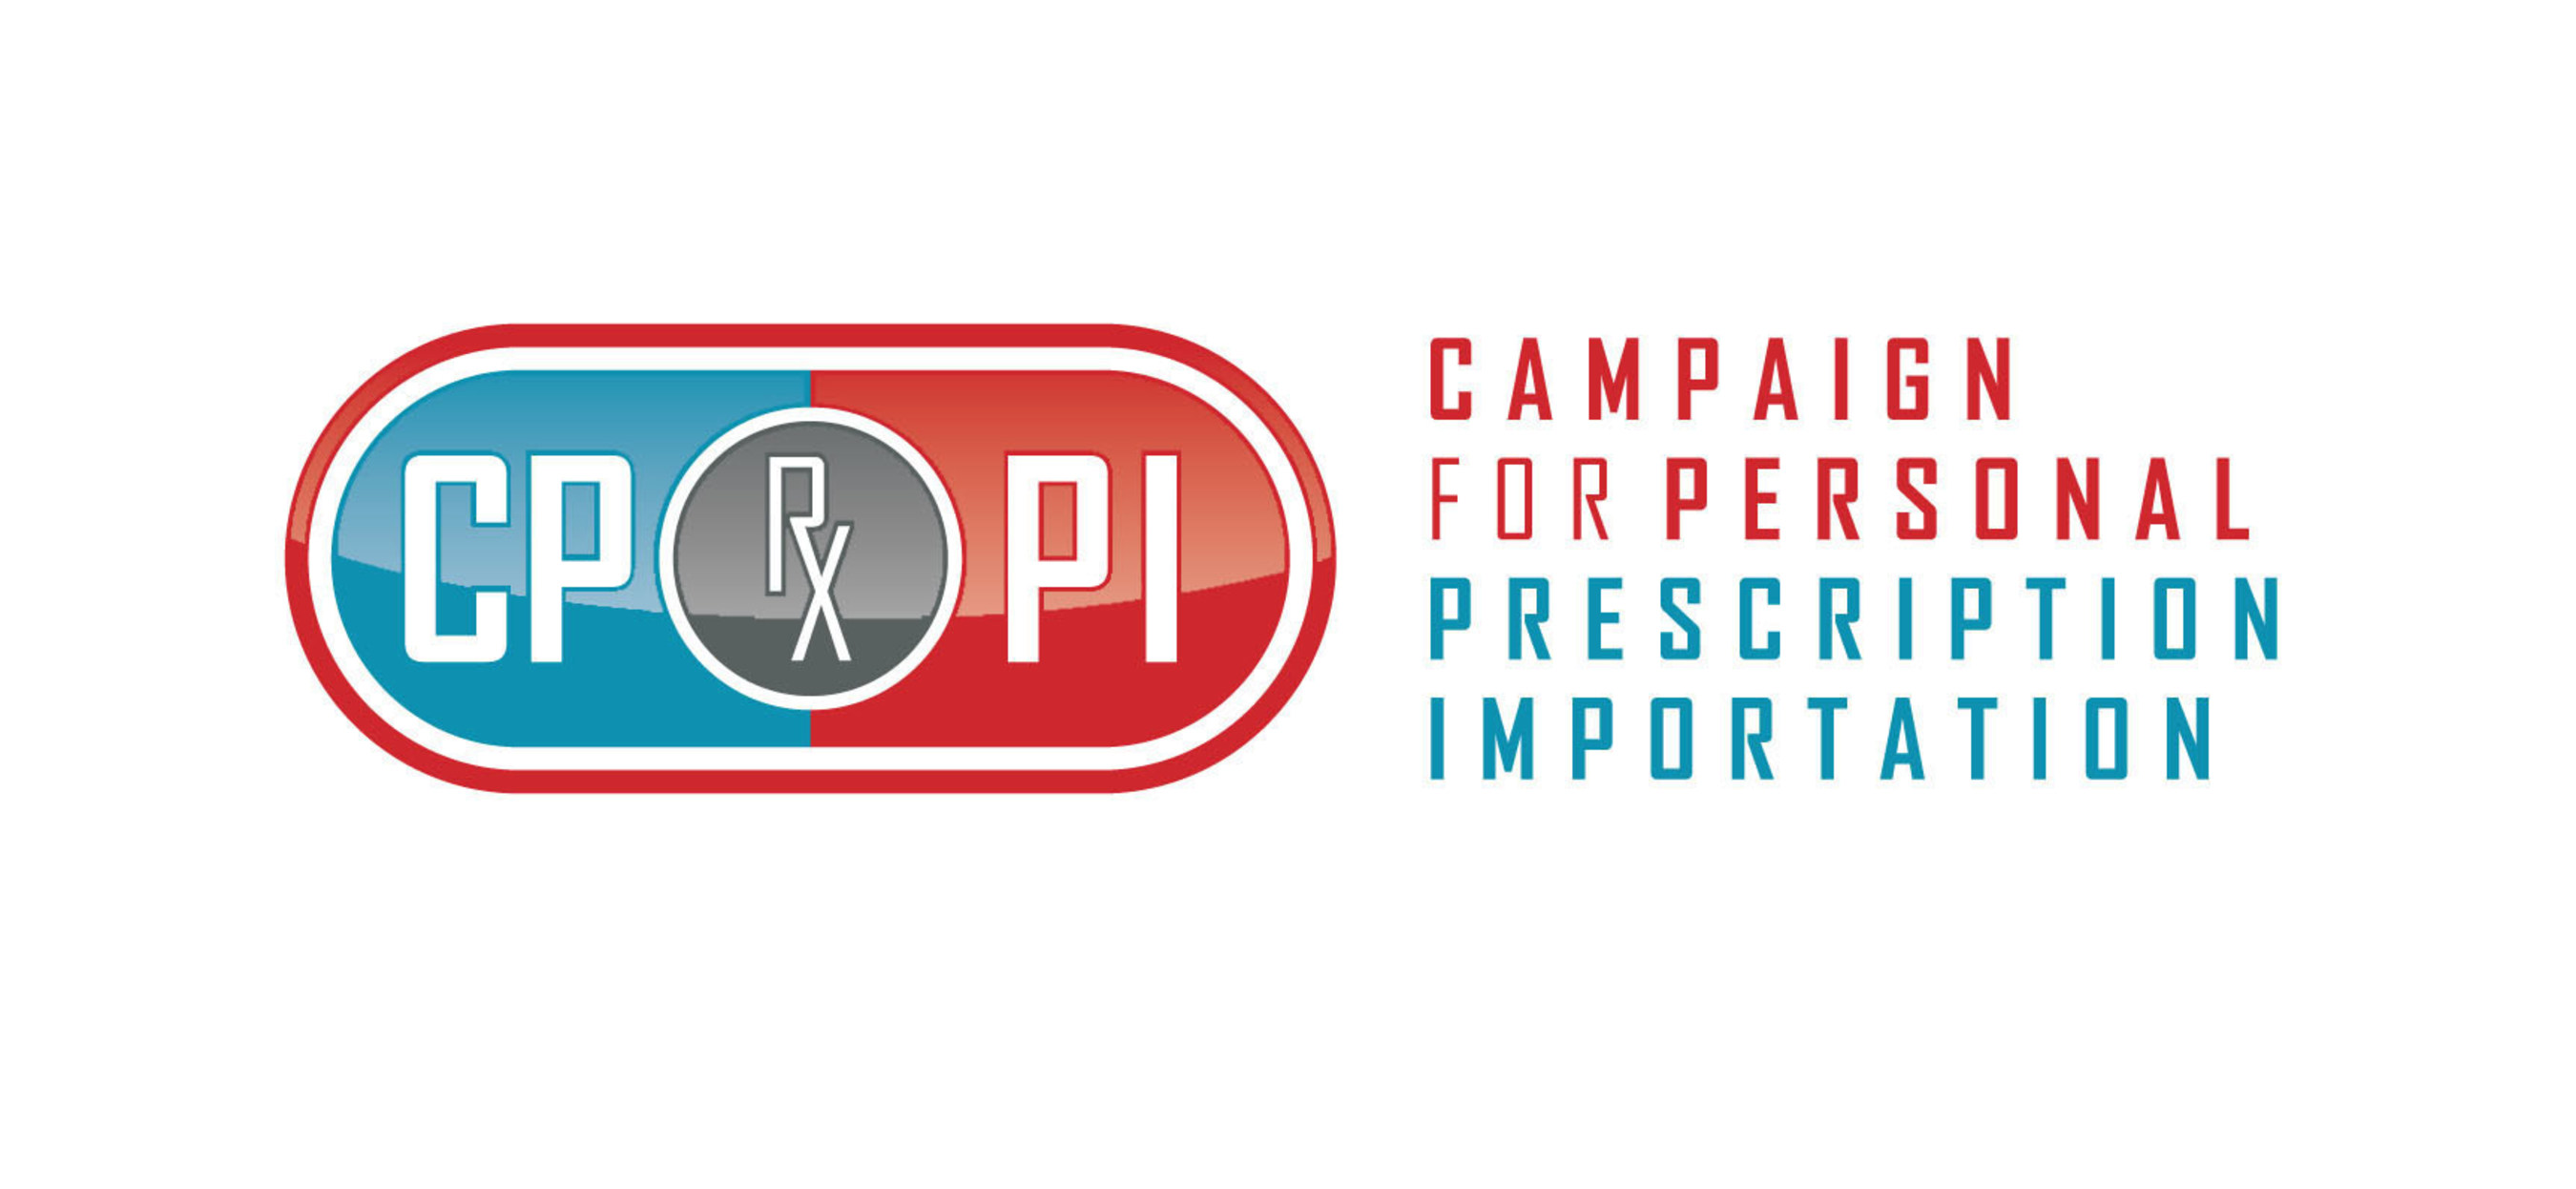 Campaign for Personal Prescription Importation (CPPI) logo